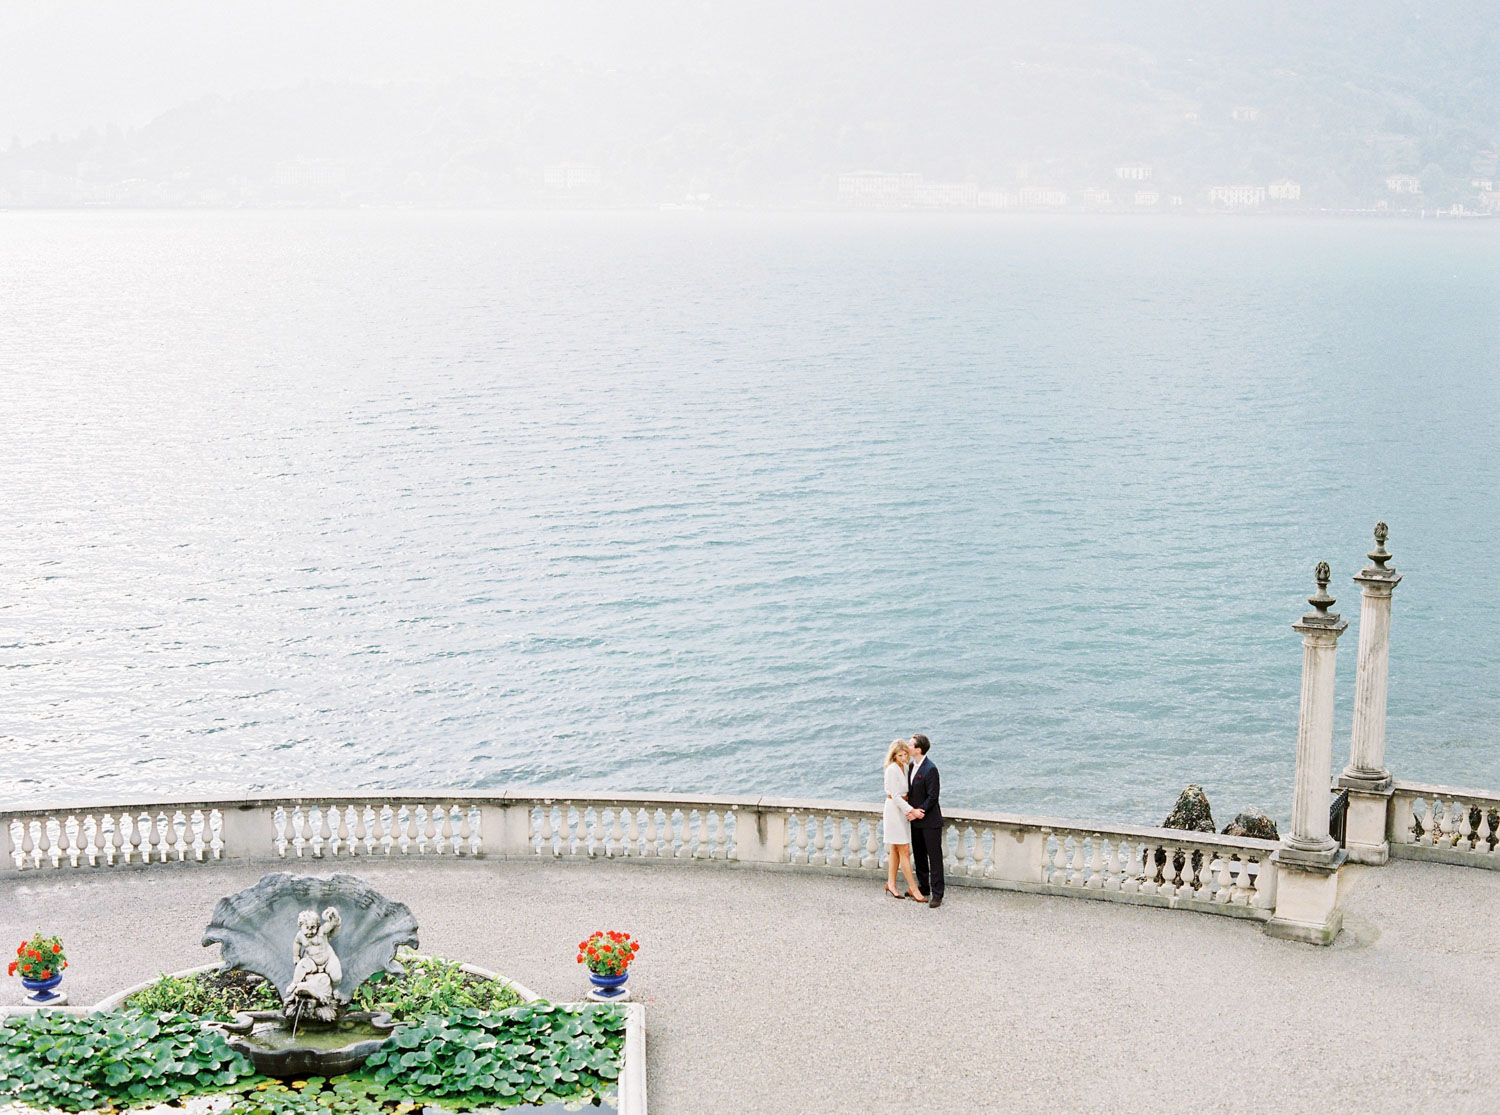 Villa Melzi in Lake Como on Fujifilm 400H and Contax 645